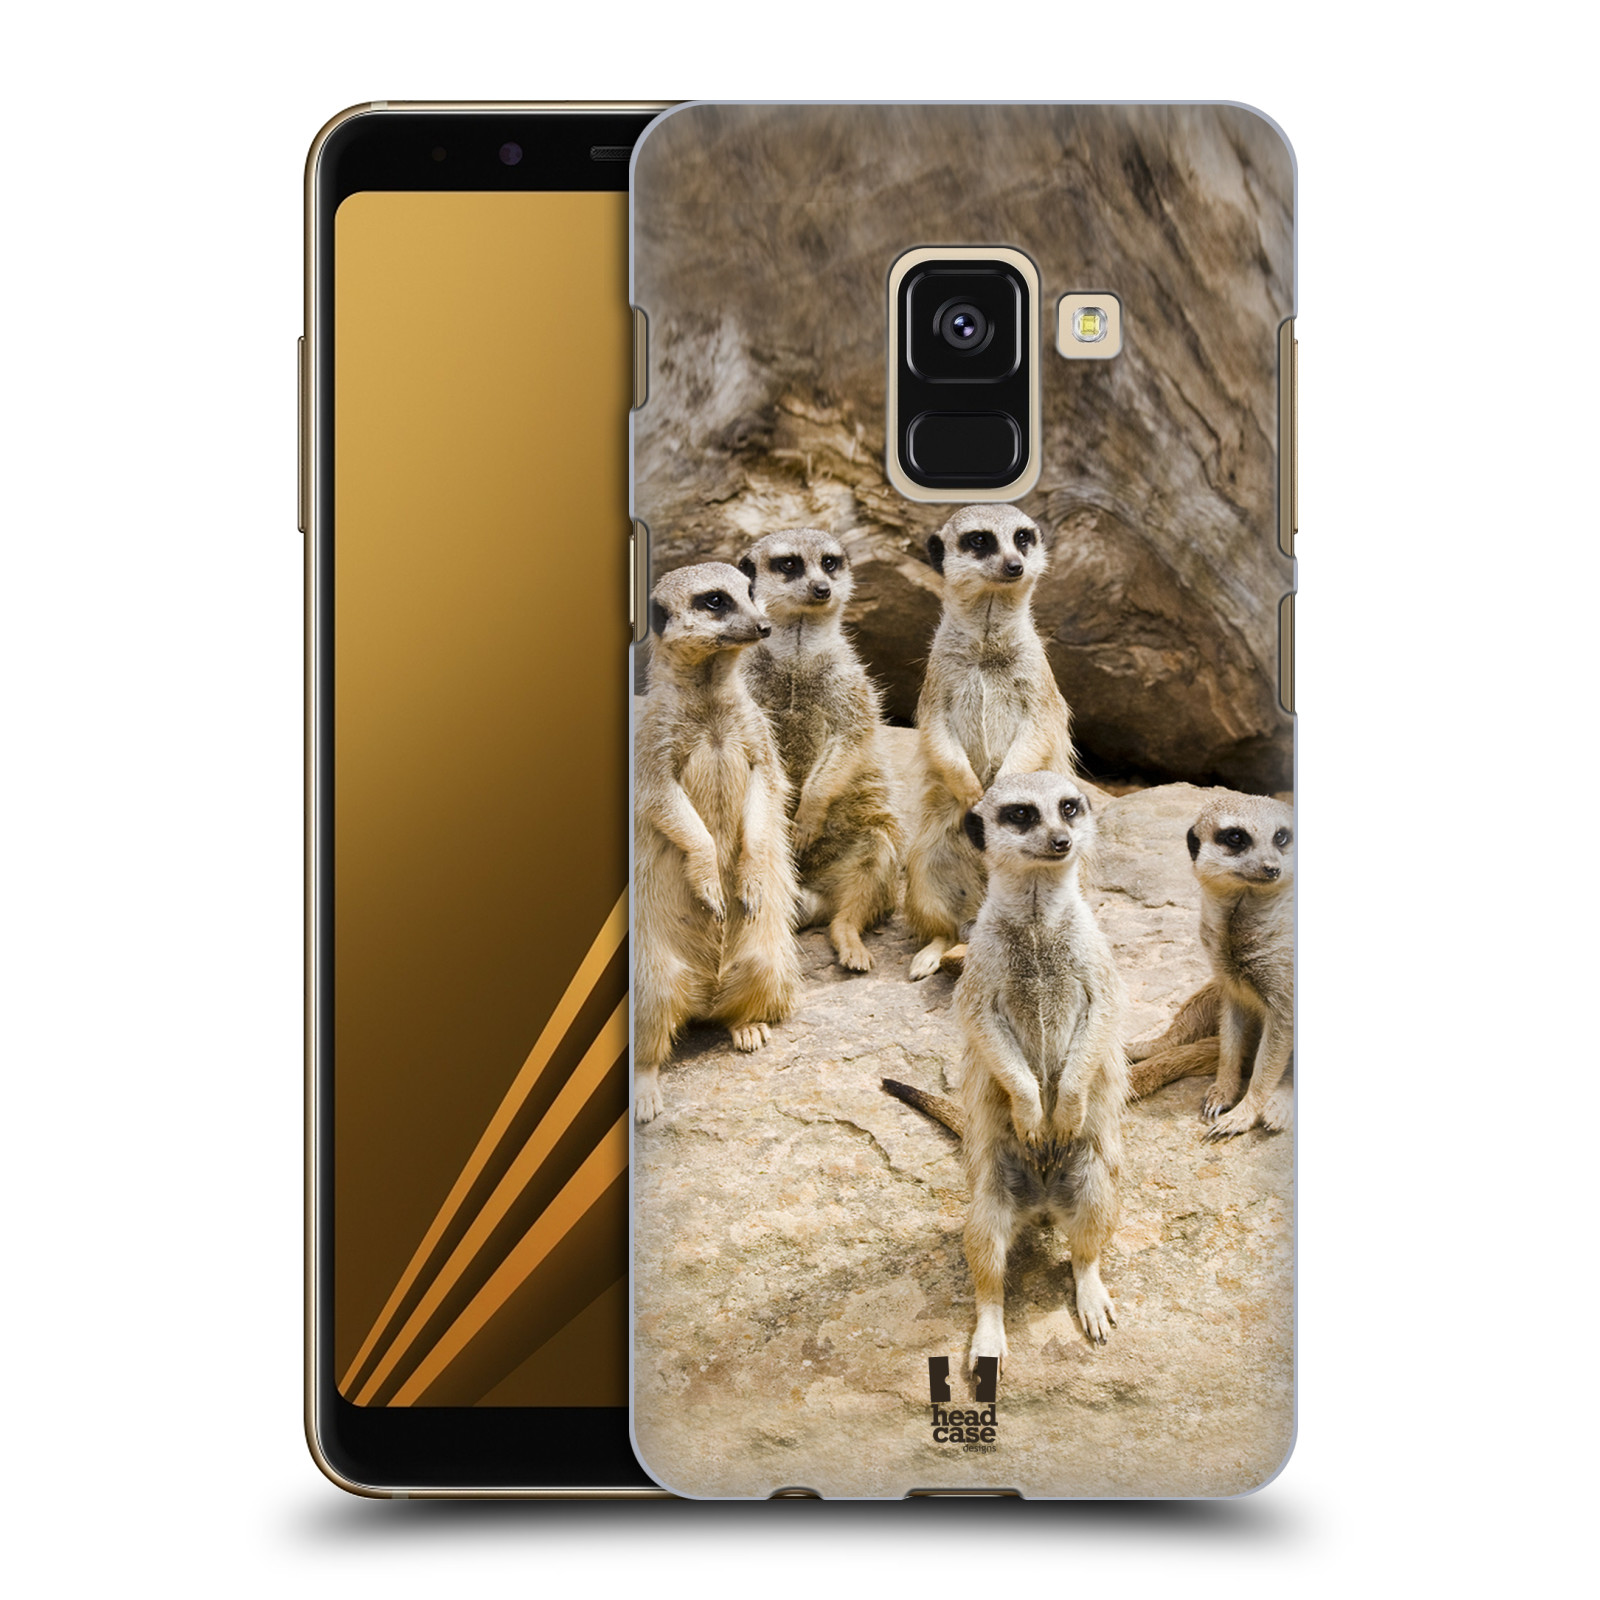 Zadní obal pro mobil Samsung Galaxy A8+ - HEAD CASE - Svět zvířat roztomilé surikaty